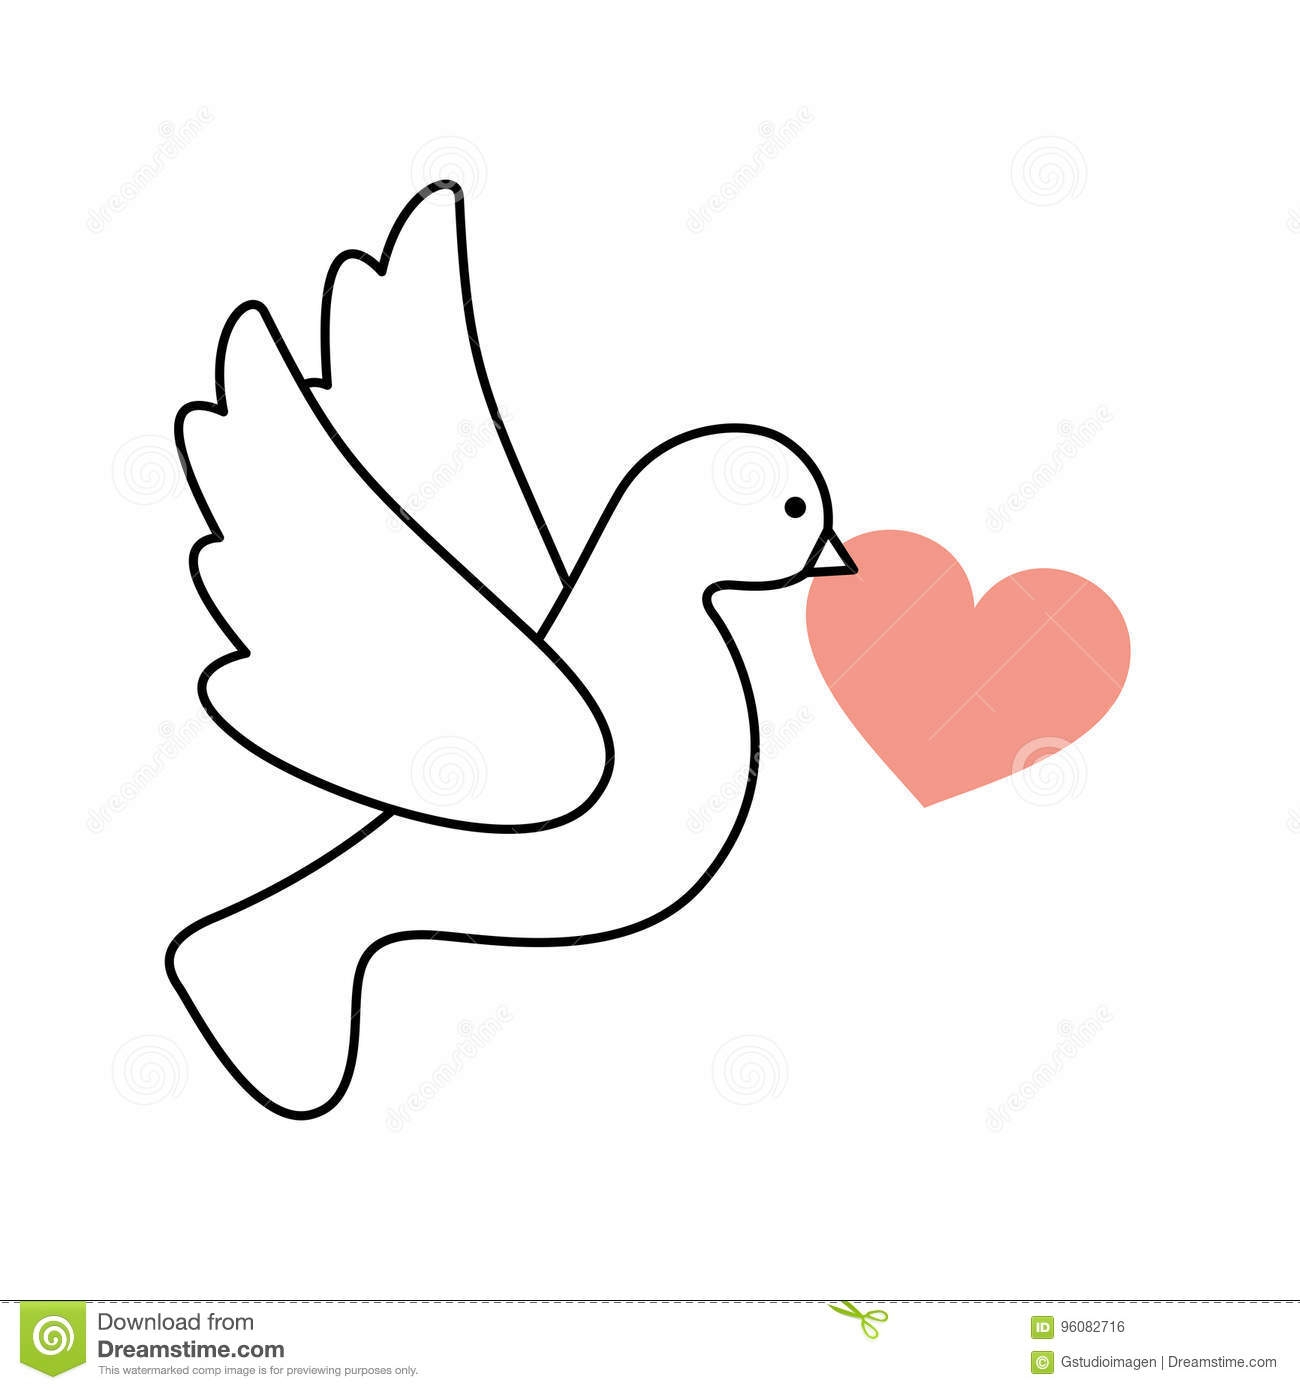 Нарисованный голубь с сердечком